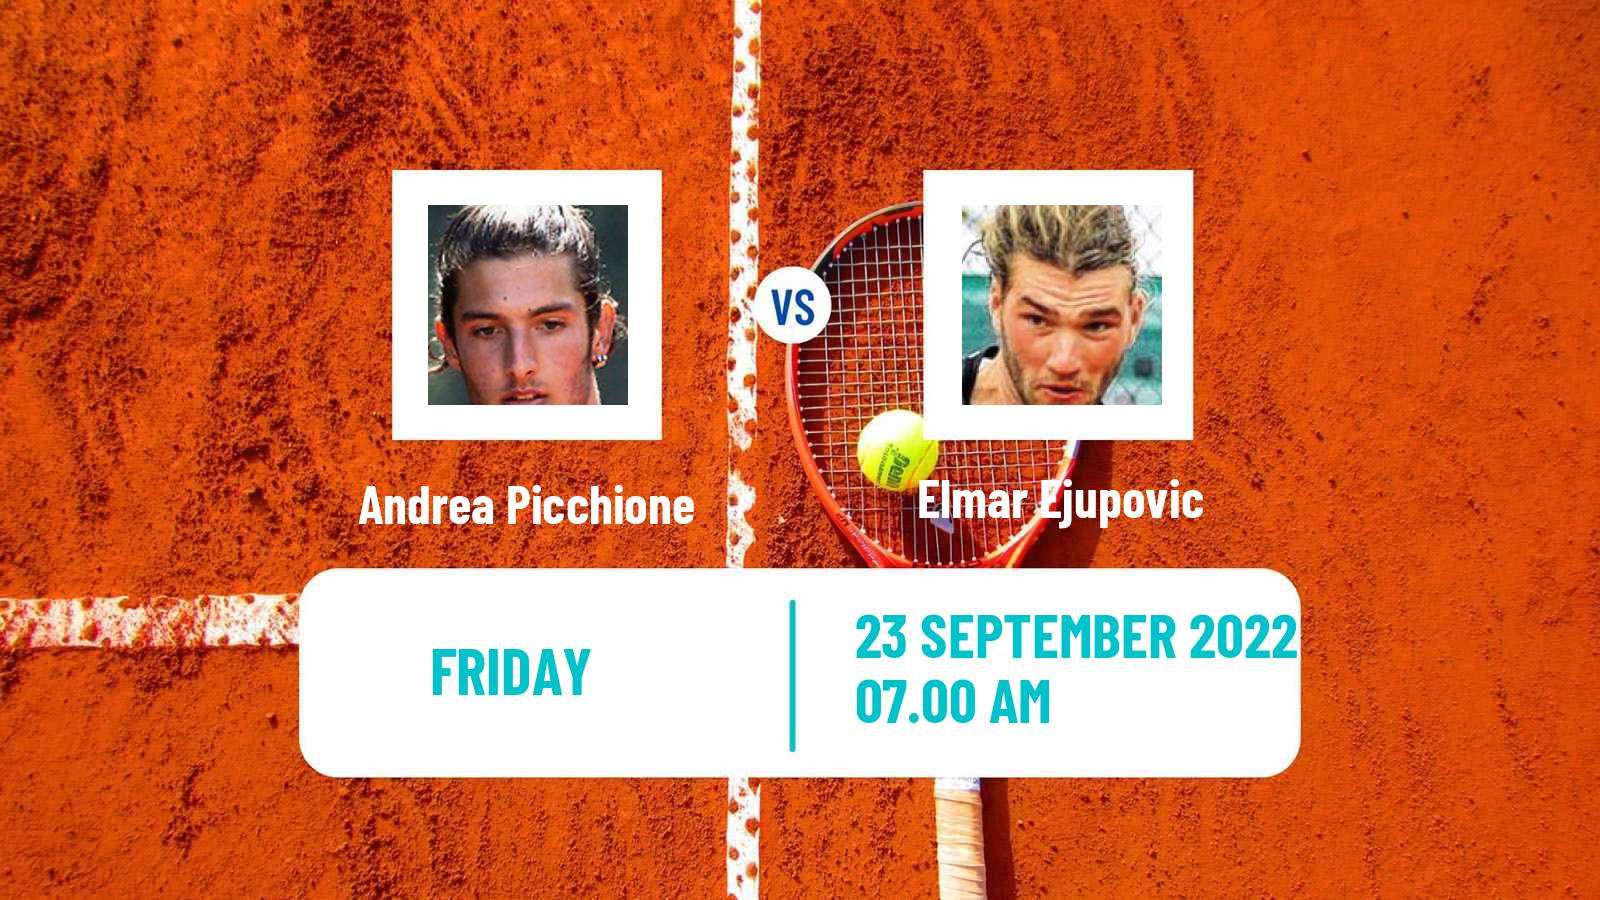 Tennis ITF Tournaments Andrea Picchione - Elmar Ejupovic